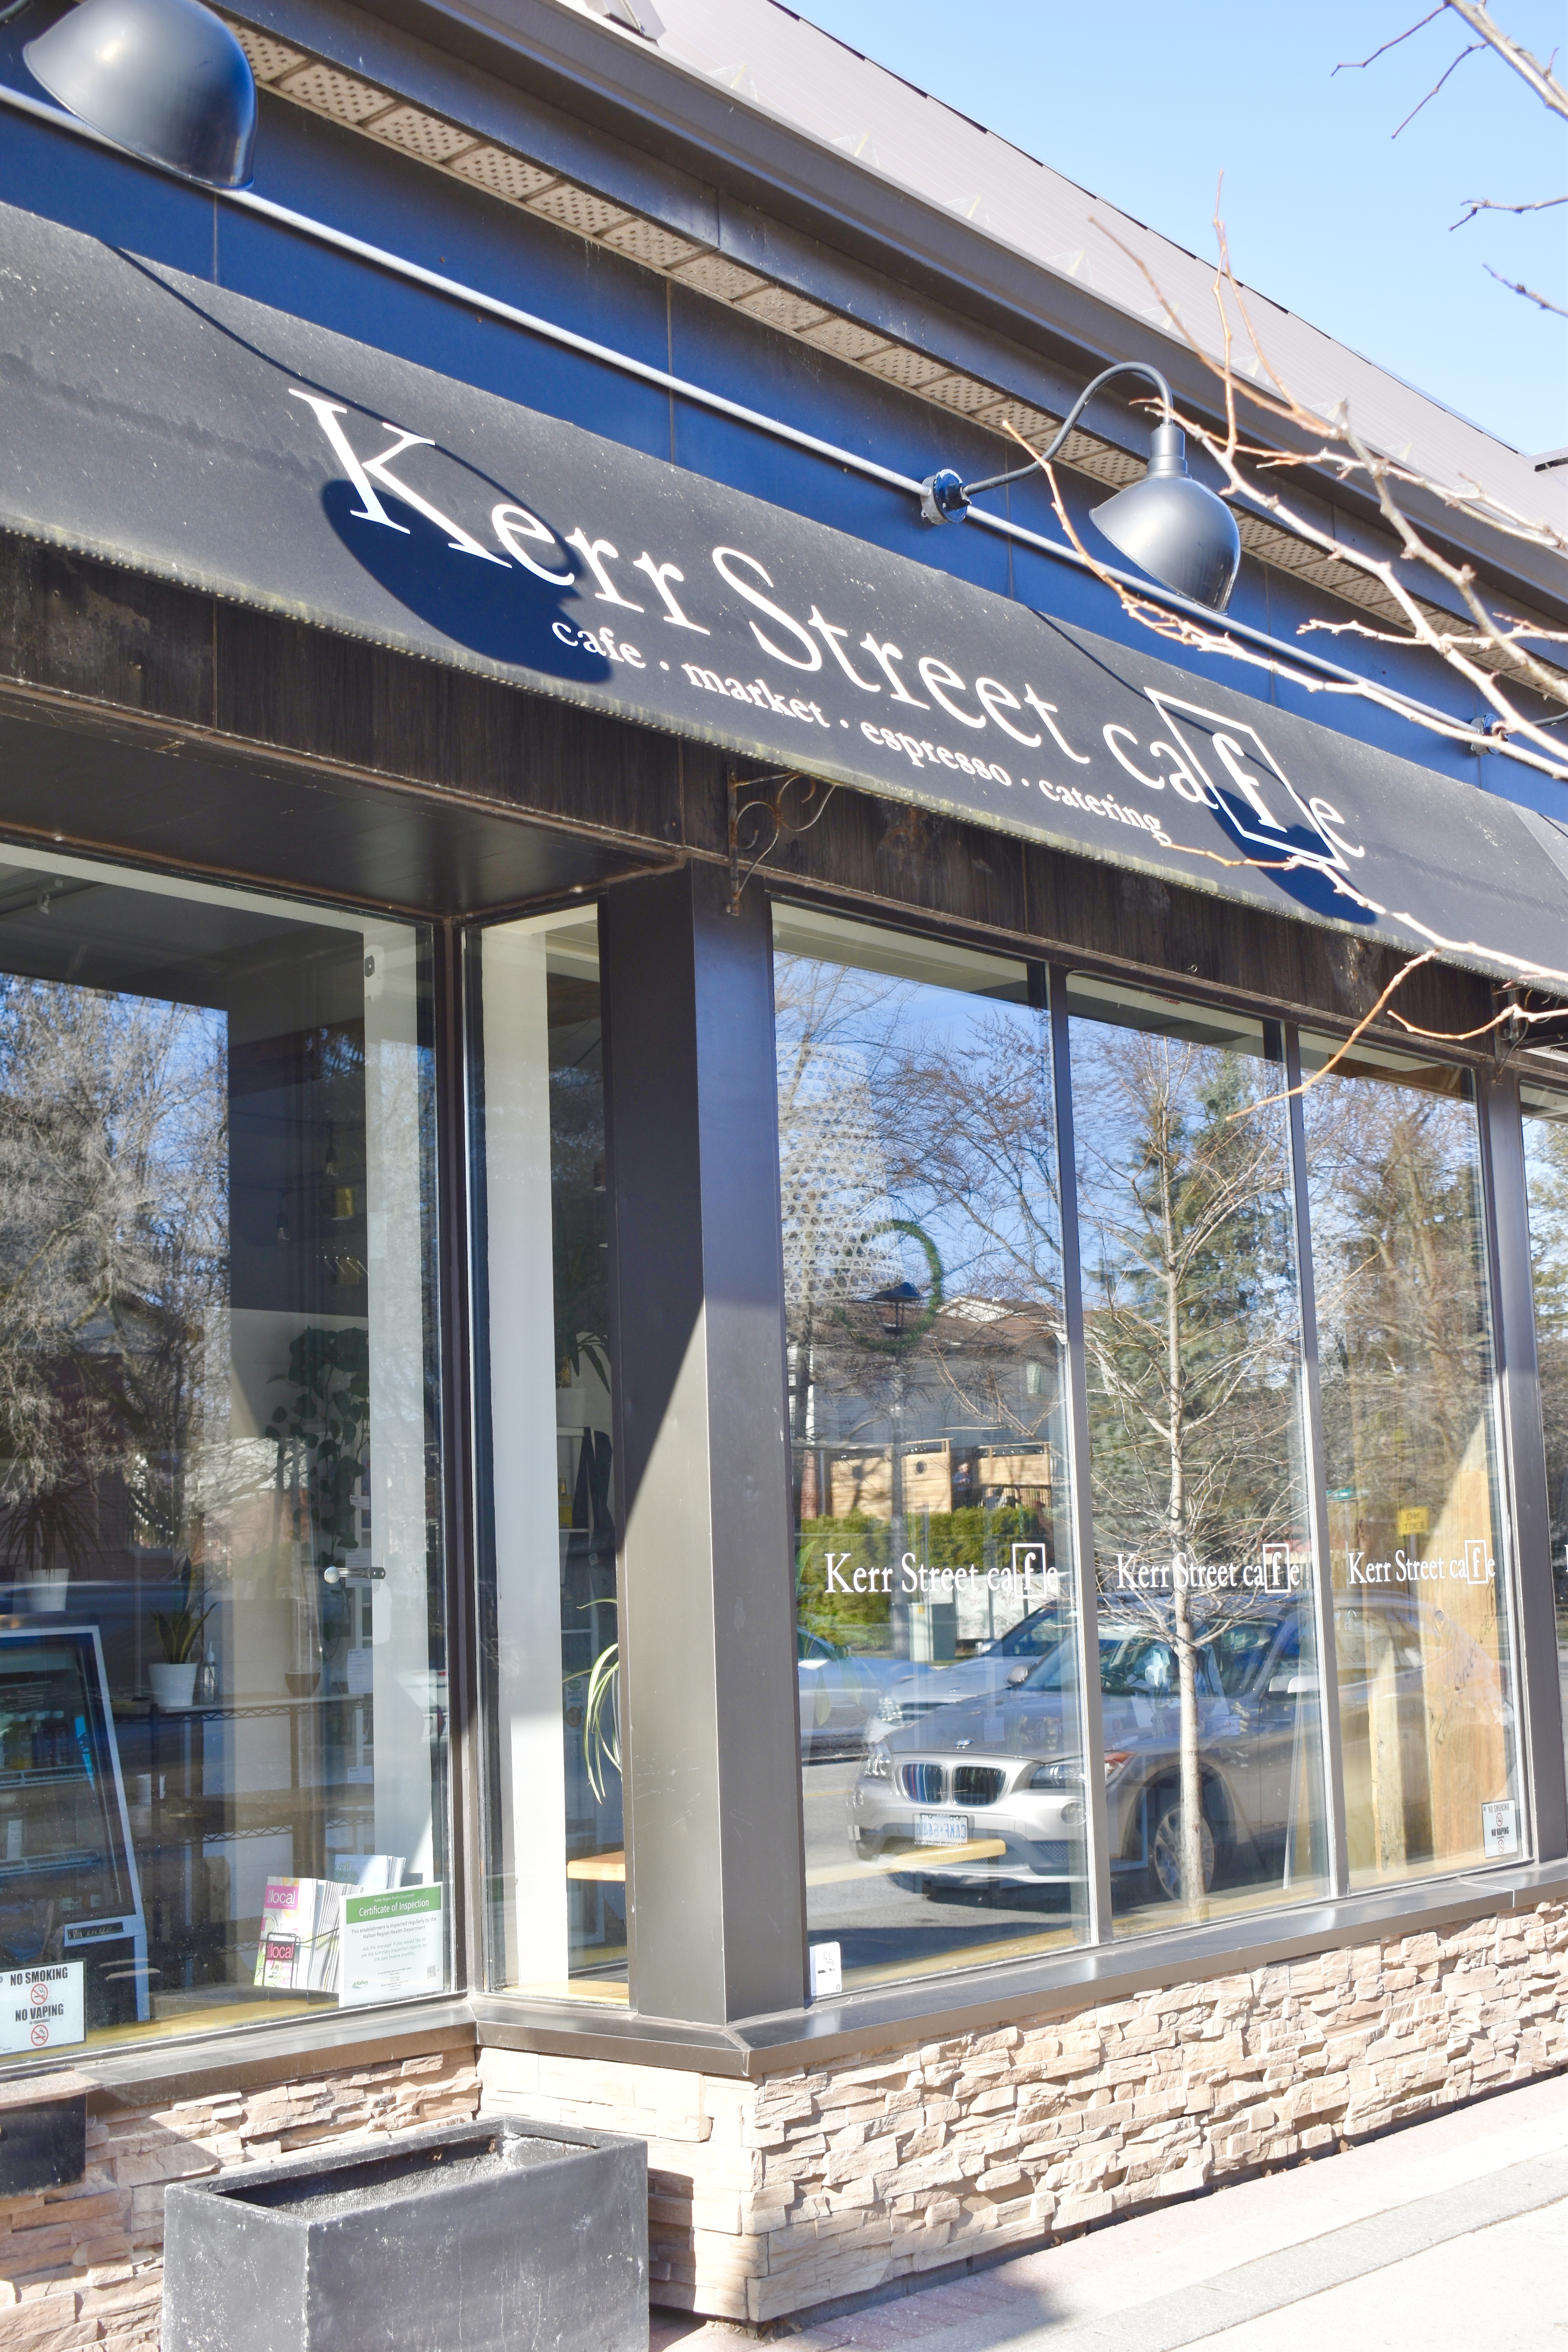 Kerr Street Cafe